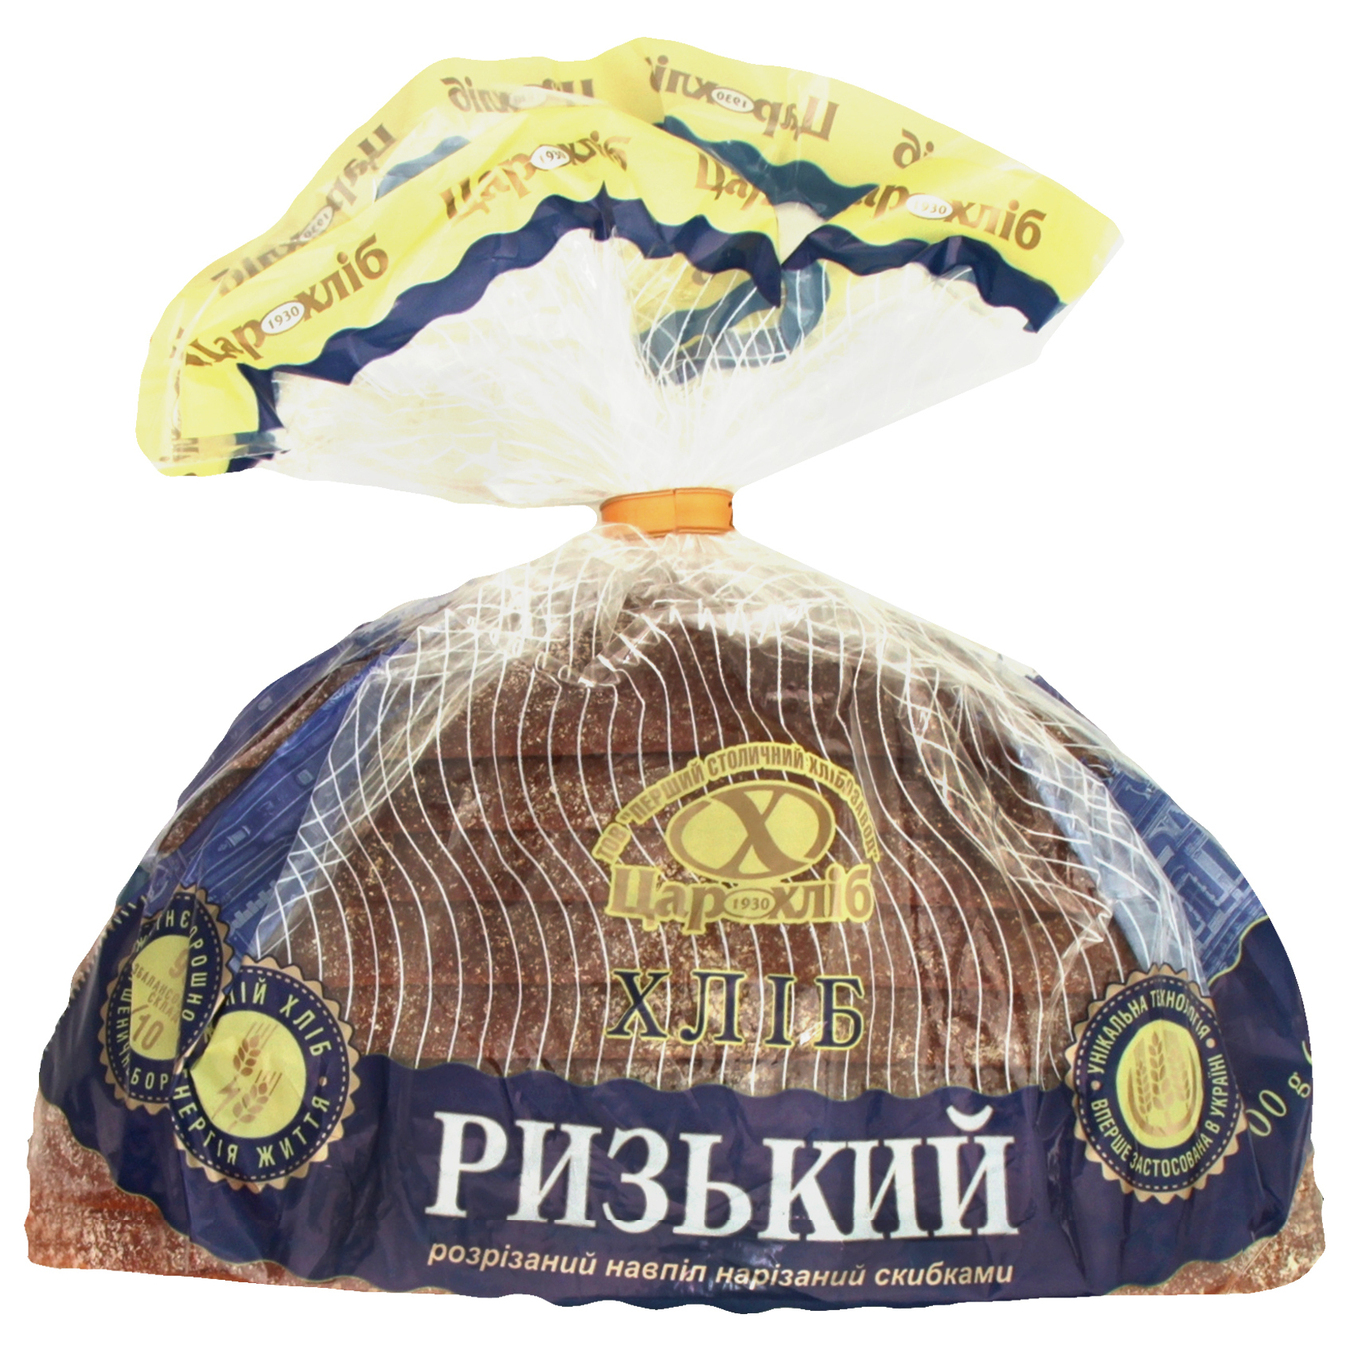 Хліб Цар Хліб Ризький розрізаний навпіл нарізаний упакований 400г